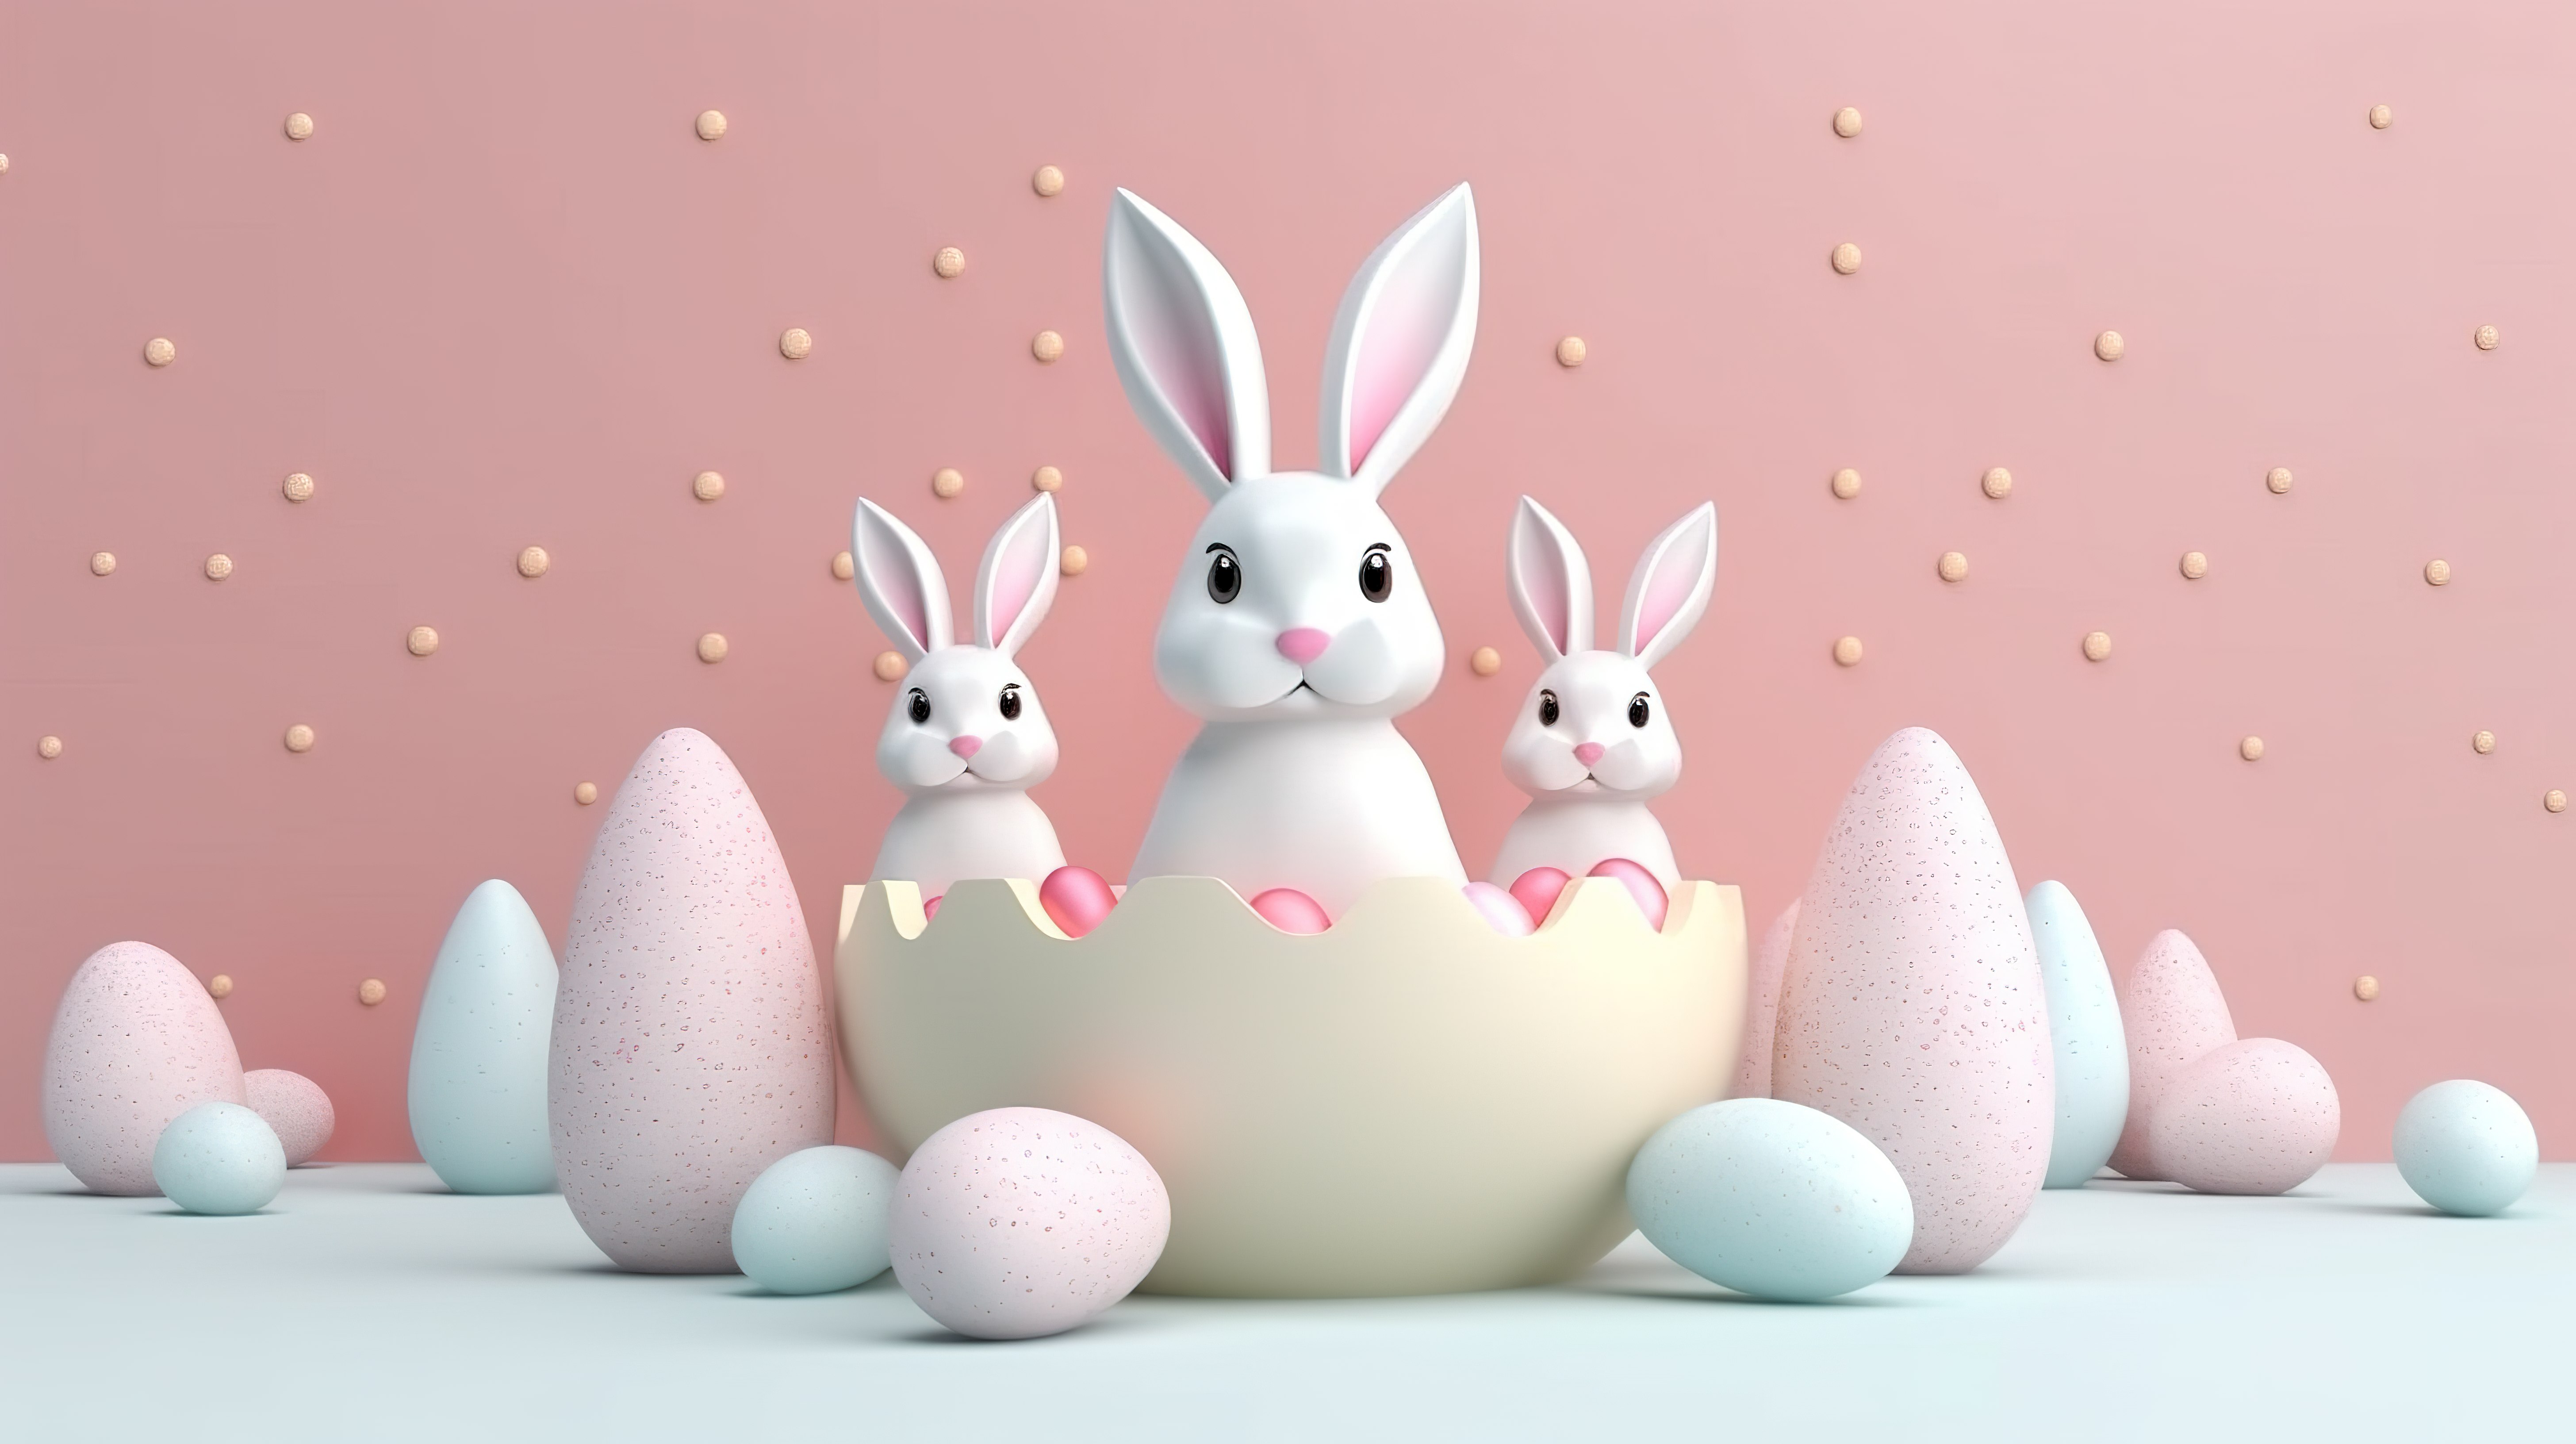 令人愉快的复活节场景可爱的卡通兔子耳朵和彩绘鸡蛋在优雅的 3D 背景上图片